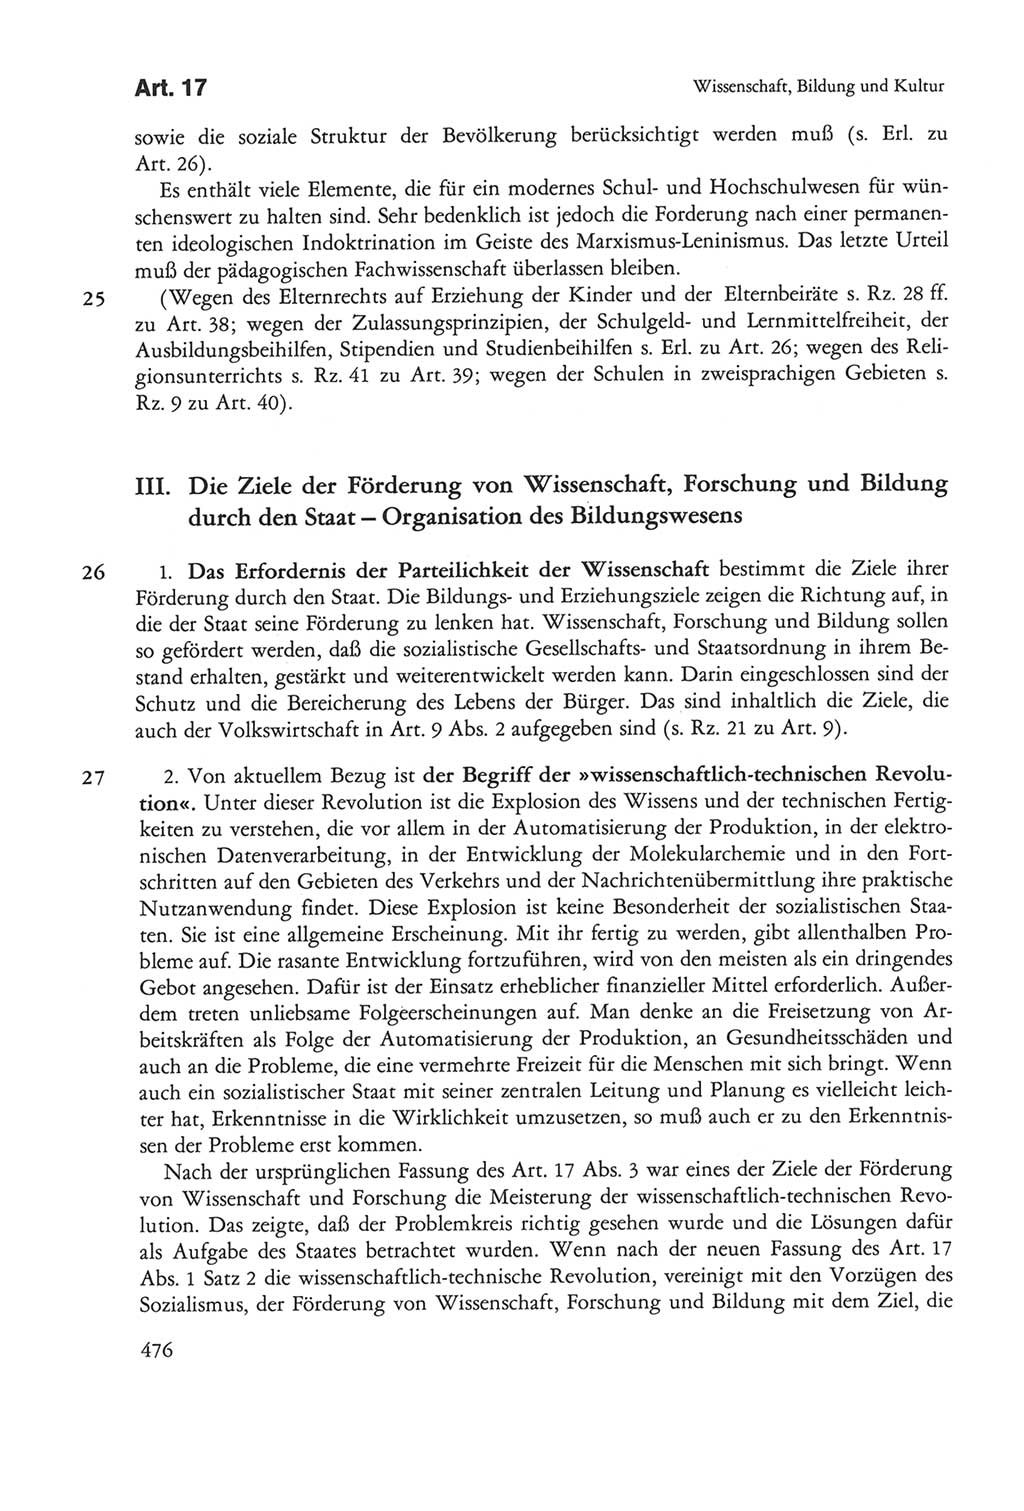 Die sozialistische Verfassung der Deutschen Demokratischen Republik (DDR), Kommentar 1982, Seite 476 (Soz. Verf. DDR Komm. 1982, S. 476)